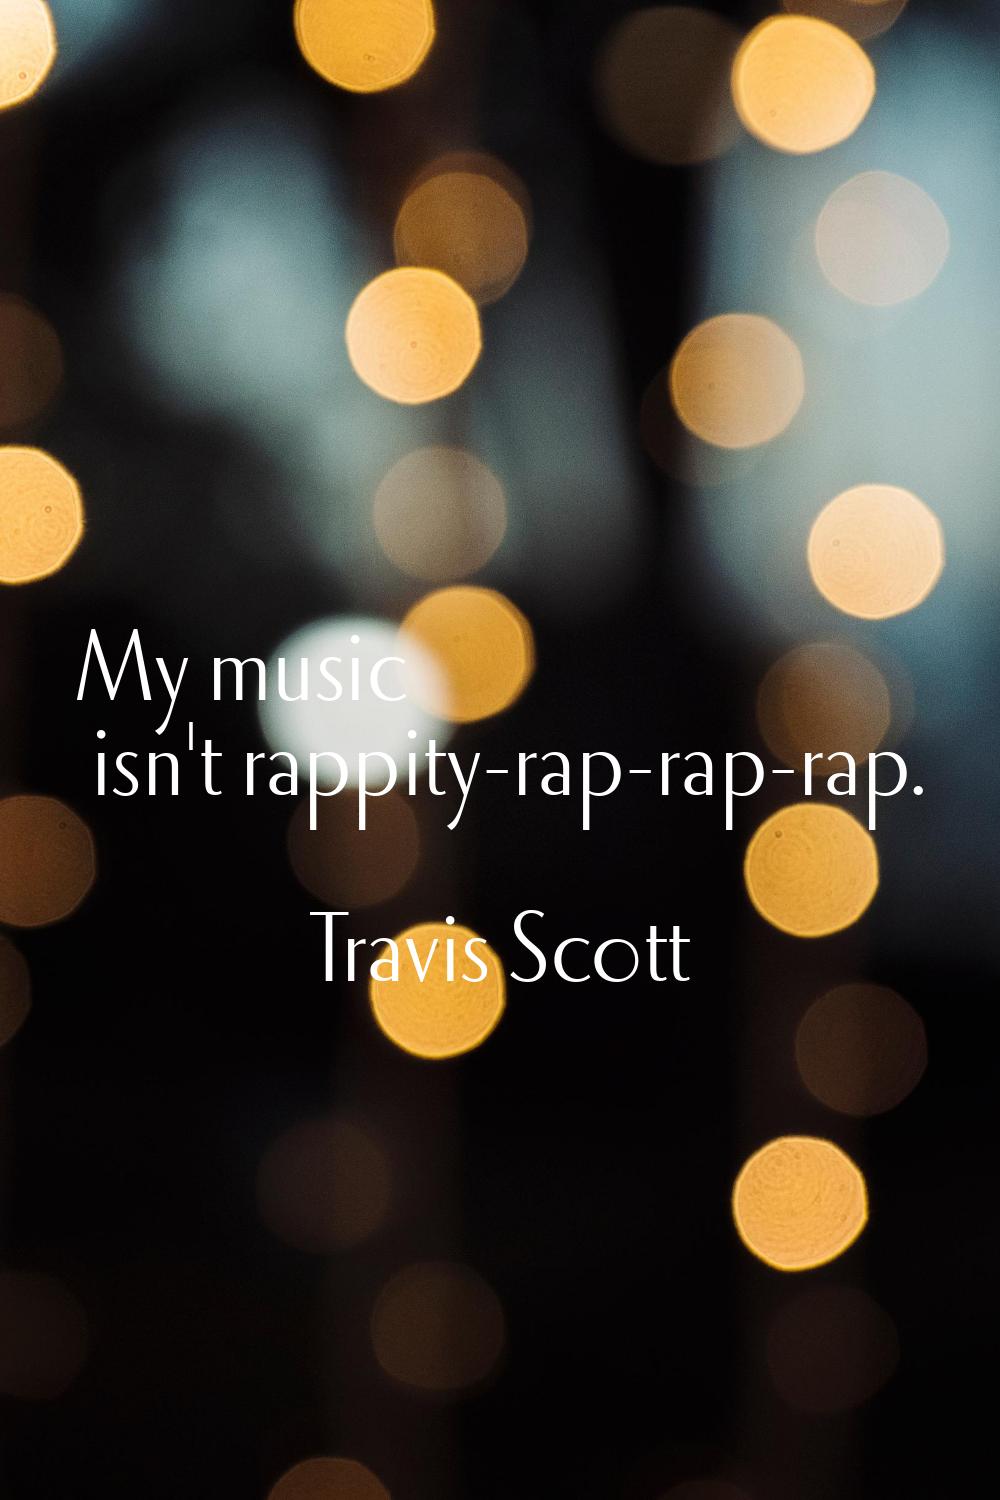 My music isn't rappity-rap-rap-rap.